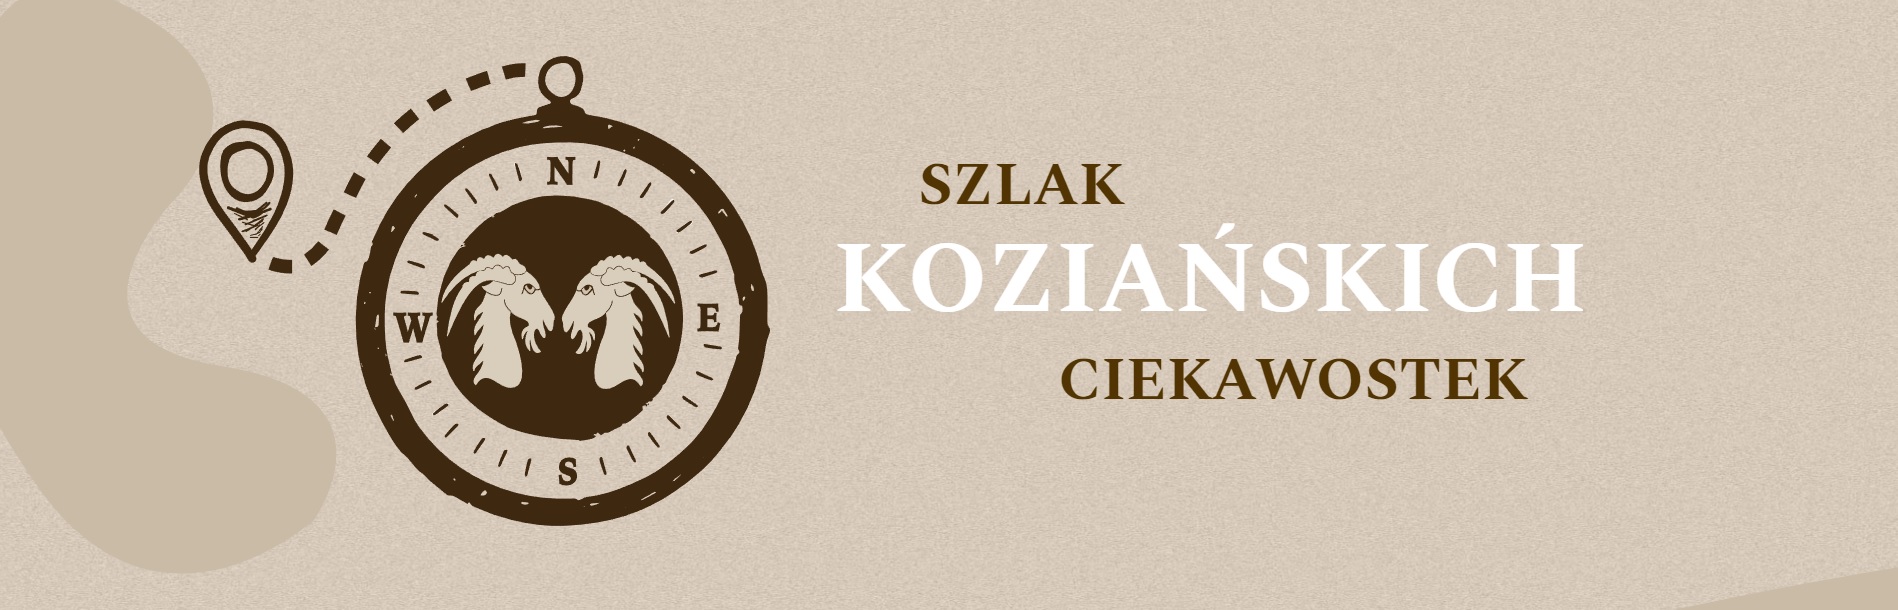 Szlak Koziańskich Ciekawostek logo